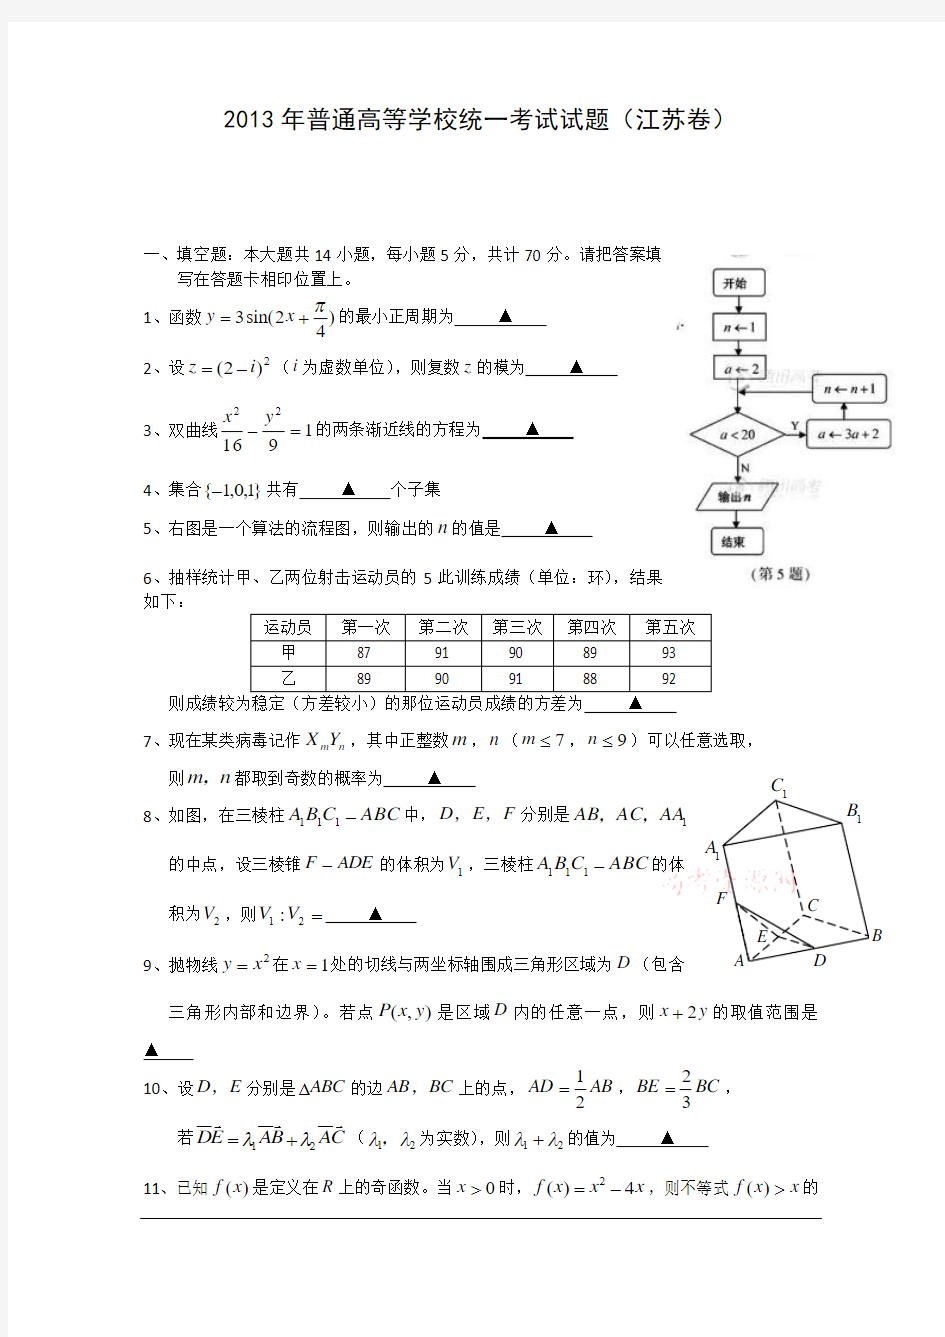 2013年高考真题——数学(江苏卷)